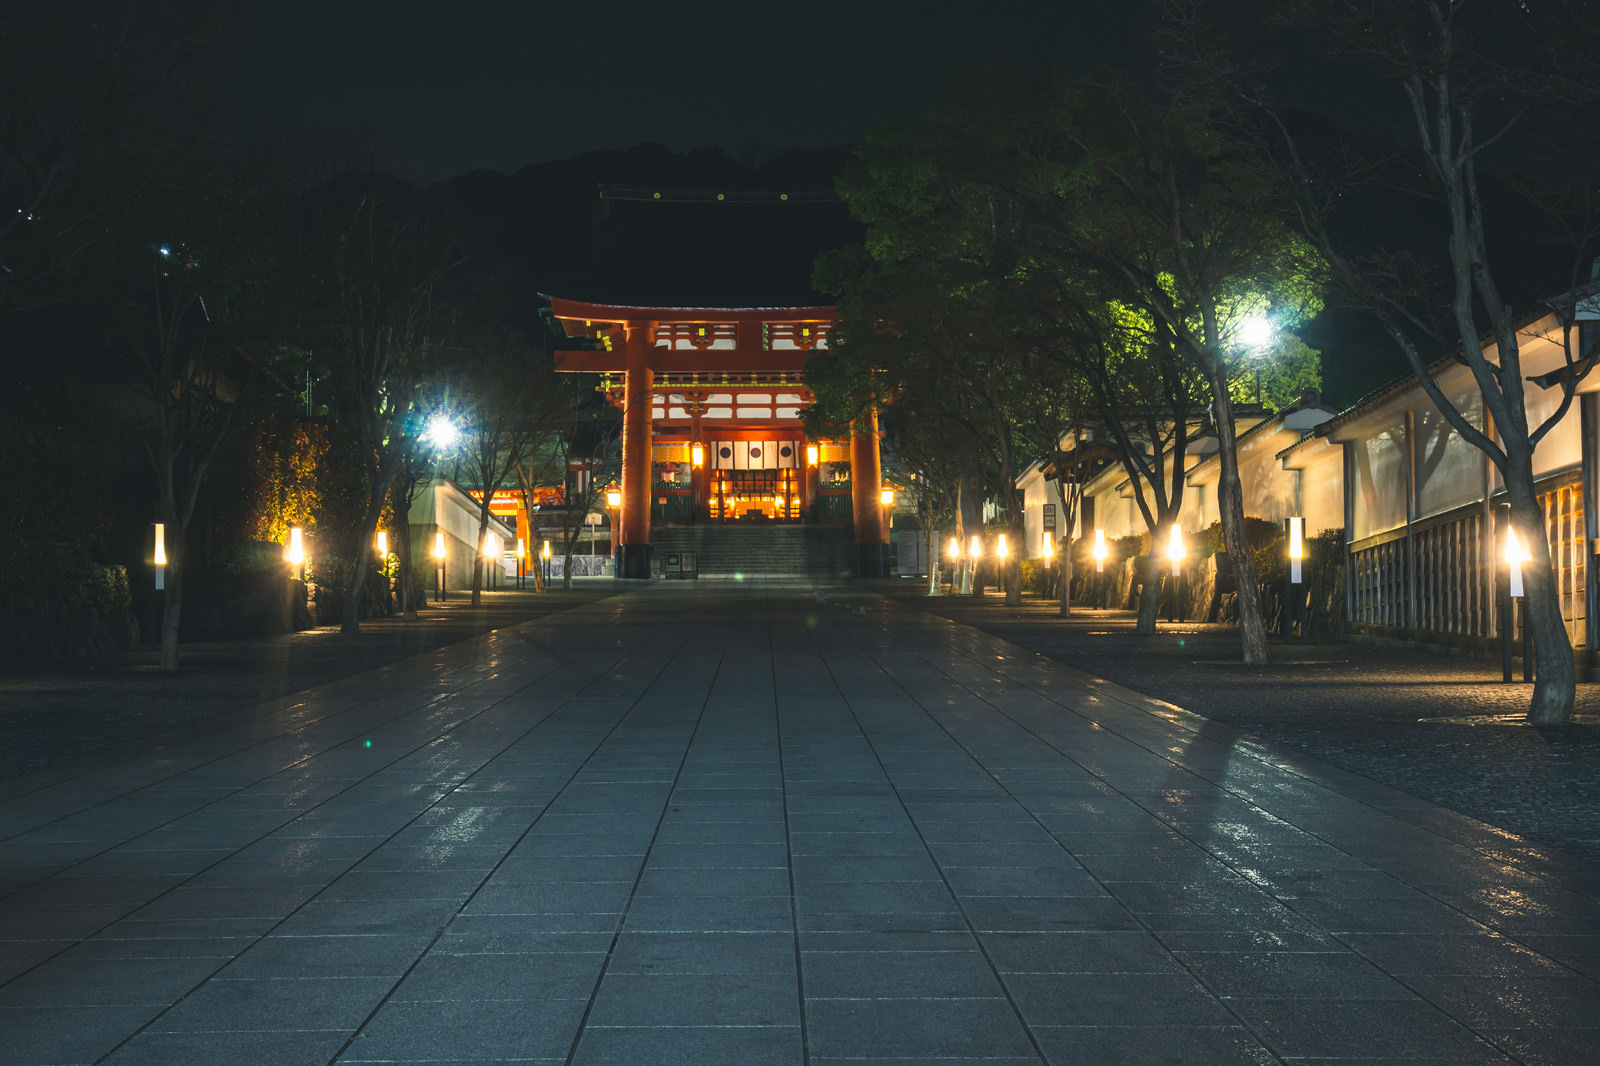 「伏見稲荷大社の二番鳥居へと続く灯篭に照らされた石畳」の写真